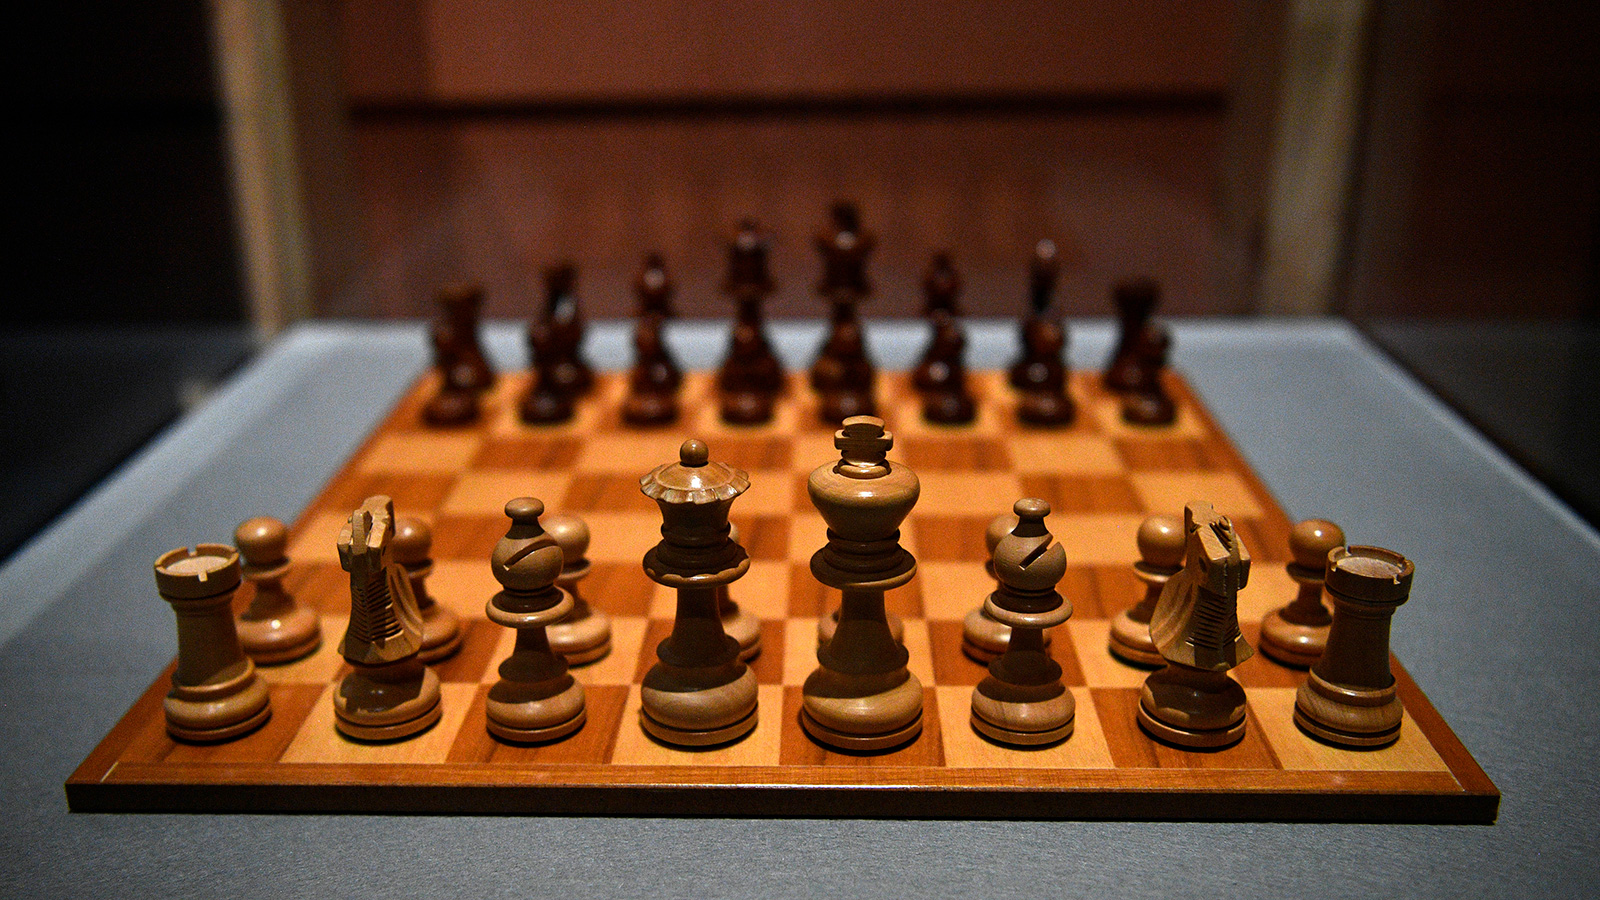 الشطرنج لعبة رخيصة وممتعة ويمكن أن تمارسها الفتيات -وأي شخص آخر- في المنزل على الإنترنت، ويمكن بسهولة أن تُشارك في البطولات